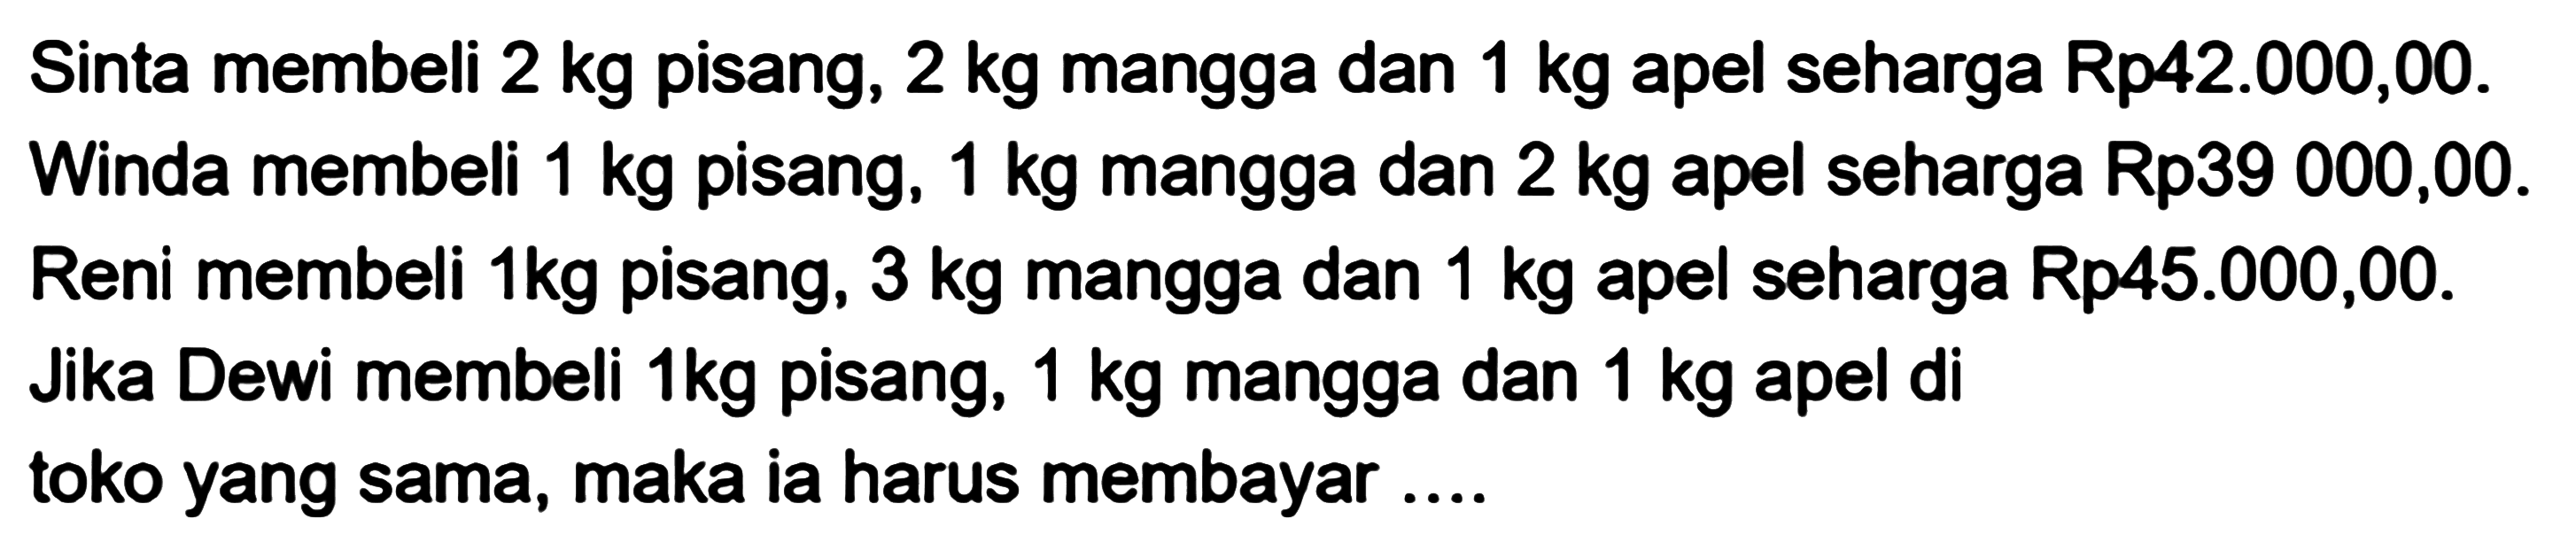 Sinta membeli 2 kg pisang, 2 kg mangga dan 1 kg apel seharga Rp42.000,00. Winda membeli 1 kg pisang, 1 kg mangga dan 2 kg apel seharga Rp39 000,00. Reni membeli 1kg pisang, 3 kg mangga dan 1 kg apel seharga Rp45.000,00. Jika Dewi membeli 1kg pisang, 1 kg mangga dan 1 kg apel di 1 toko yang sama, maka ia harus membayar ....